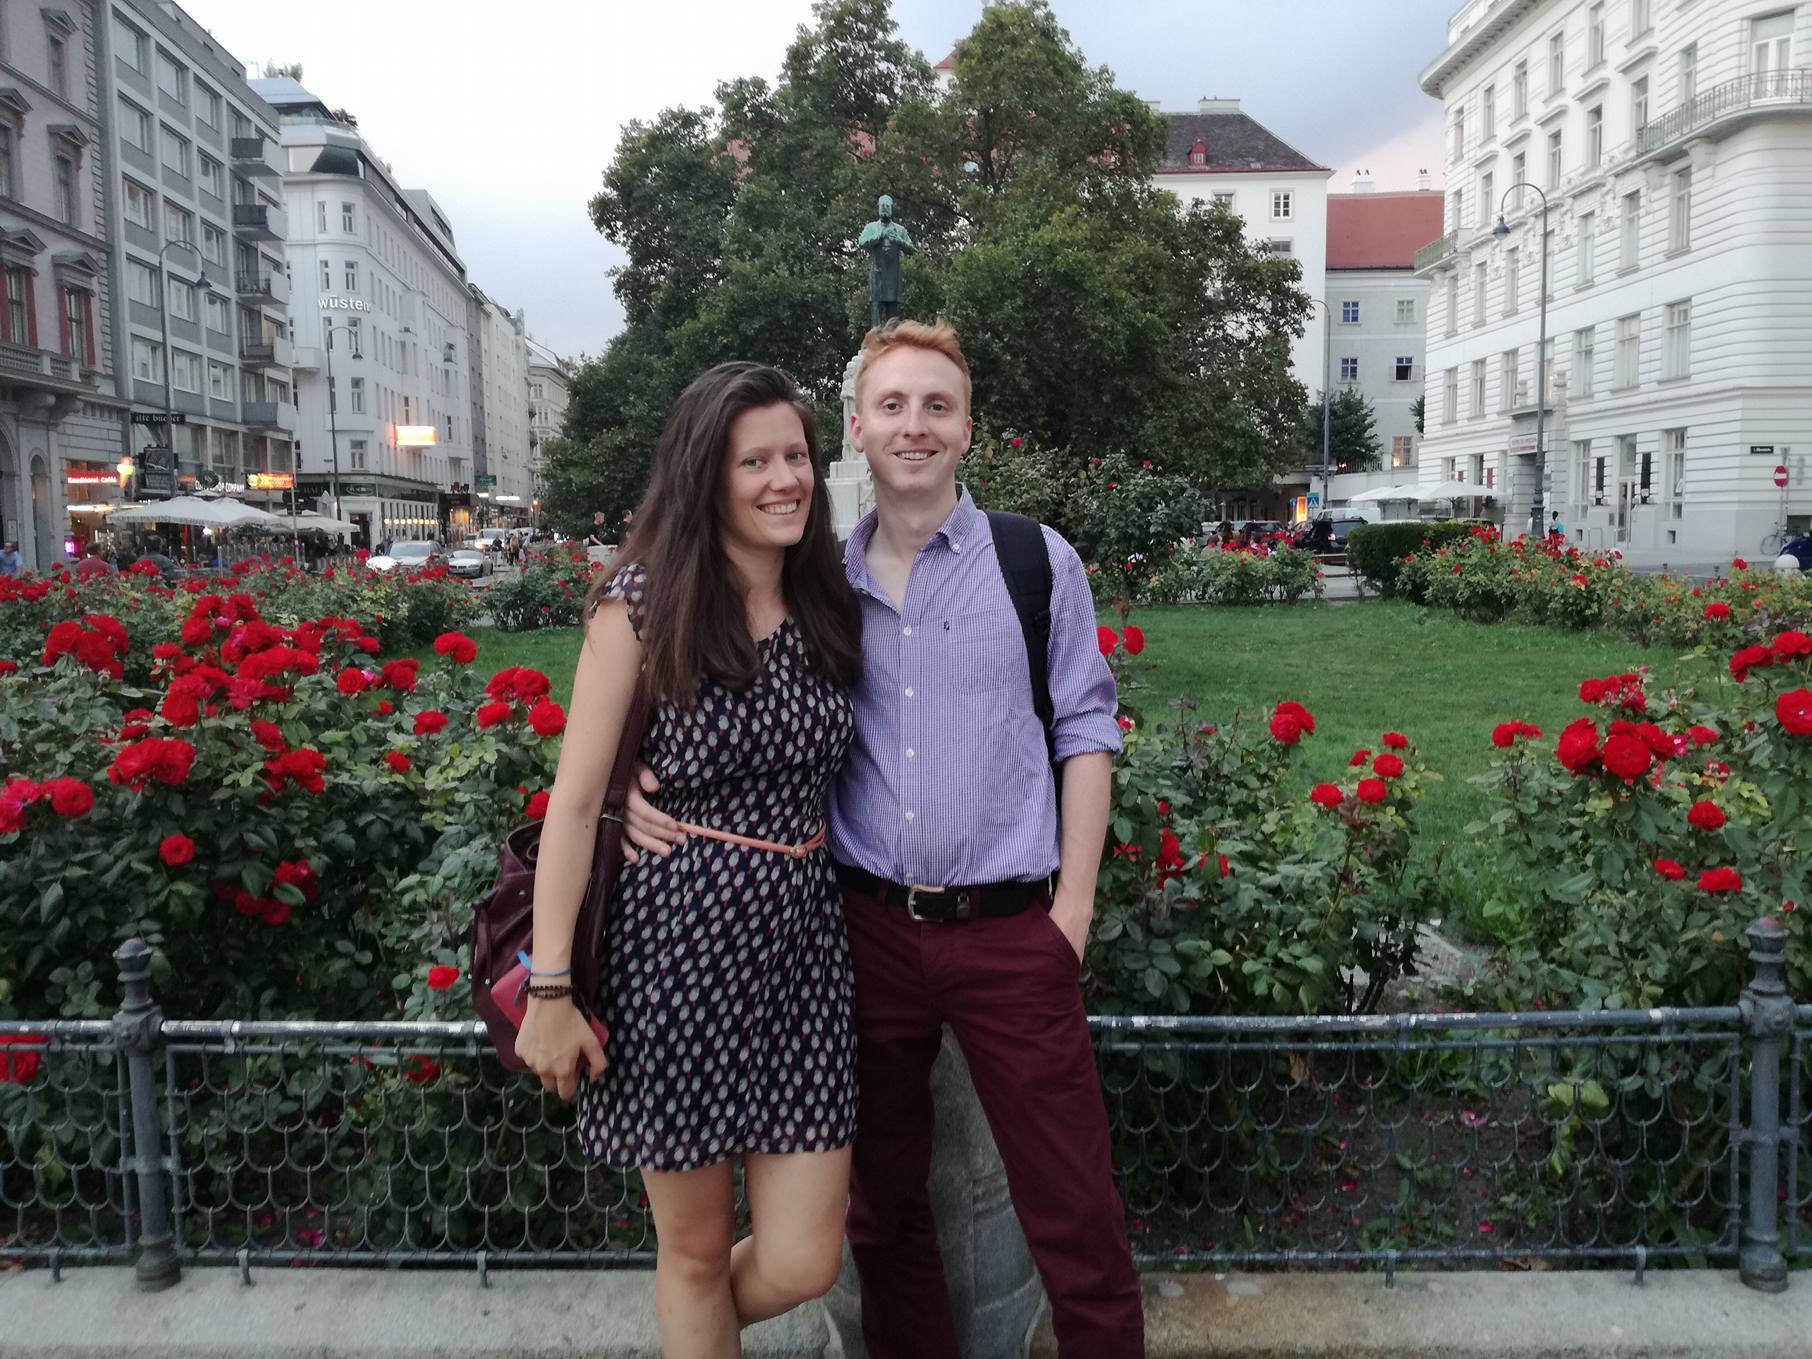 Kedvesemmel egy csodás napot töltöttünk el Bécsben! Köszönöm Neked, Judit!